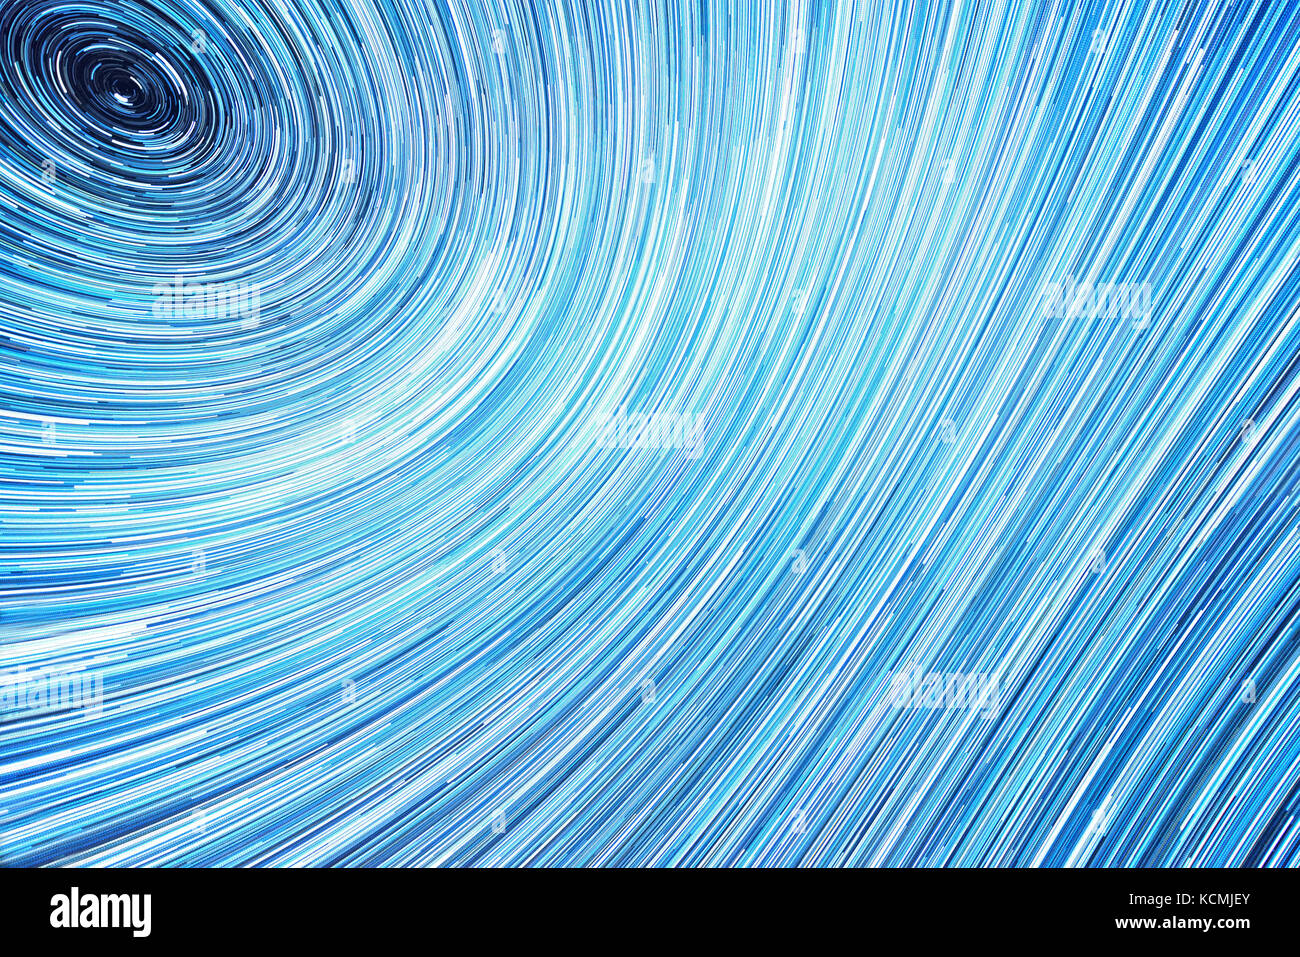 Voie lactée étoiles long sentiers autour de North Star mettant en évidence la rotation de la terre Banque D'Images